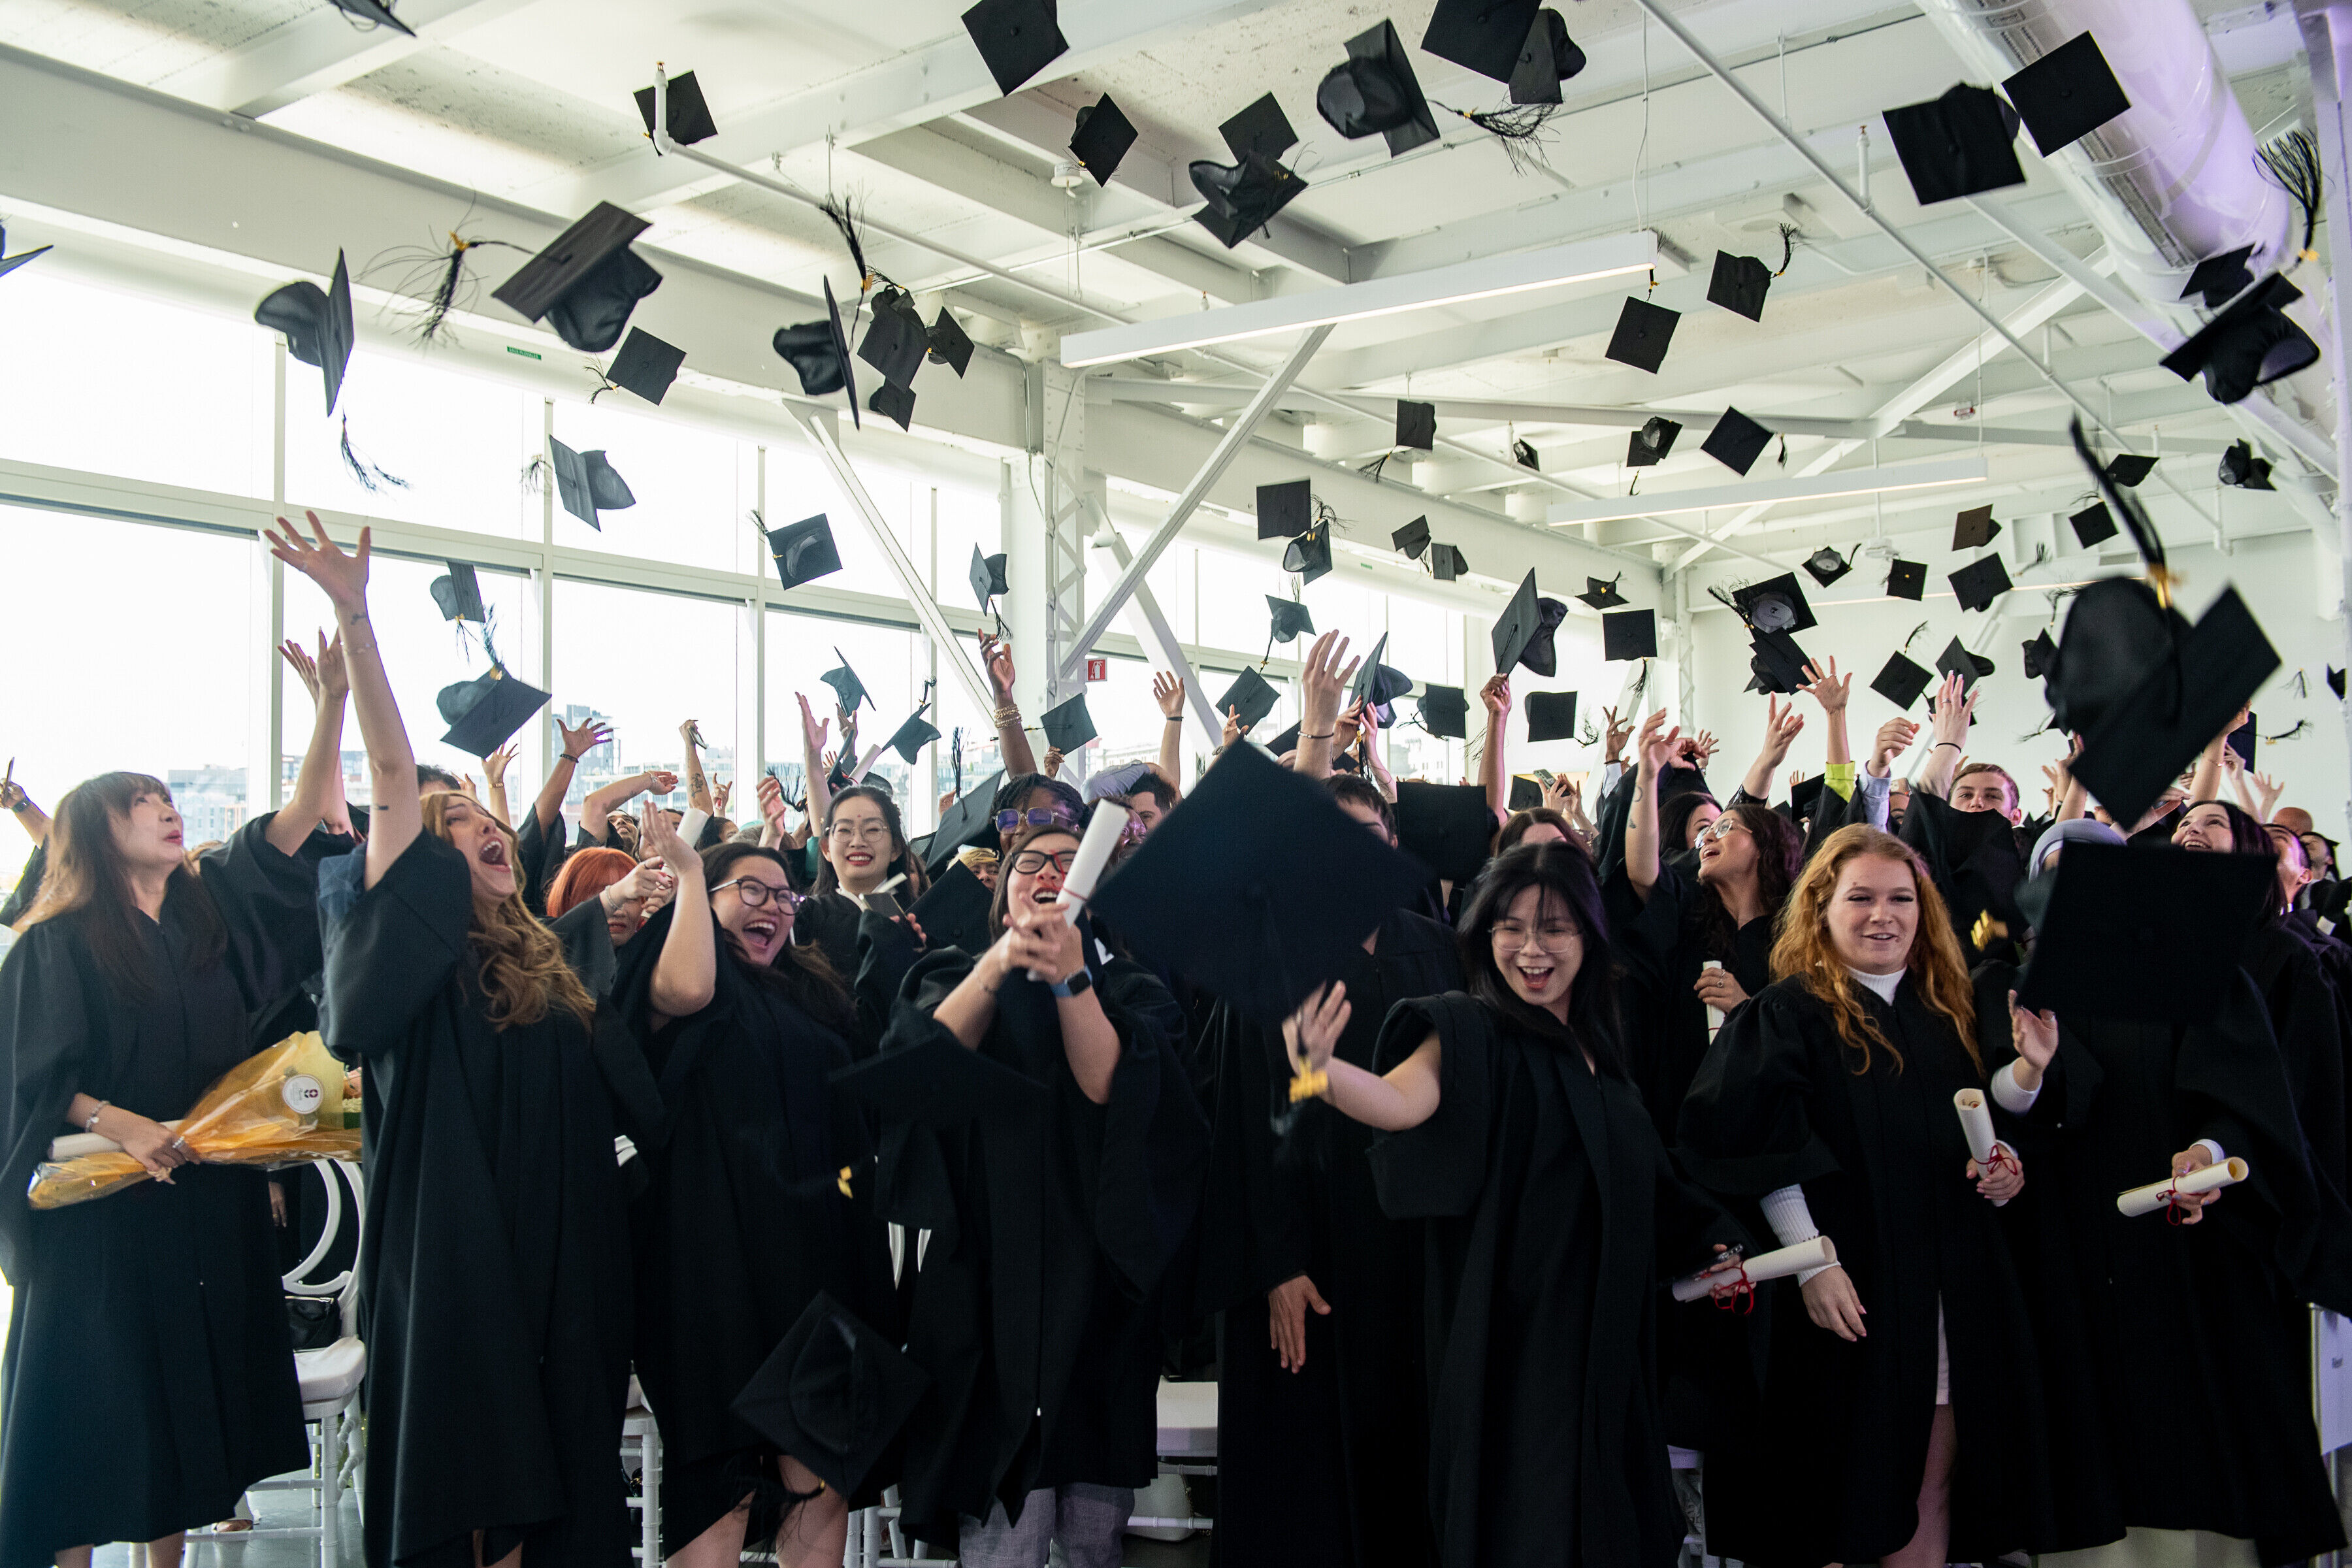 Un groupe de diplômés joyeux en toges et coiffes noires célèbrent en jetant leurs chapeaux en l'air dans une salle lumineuse.